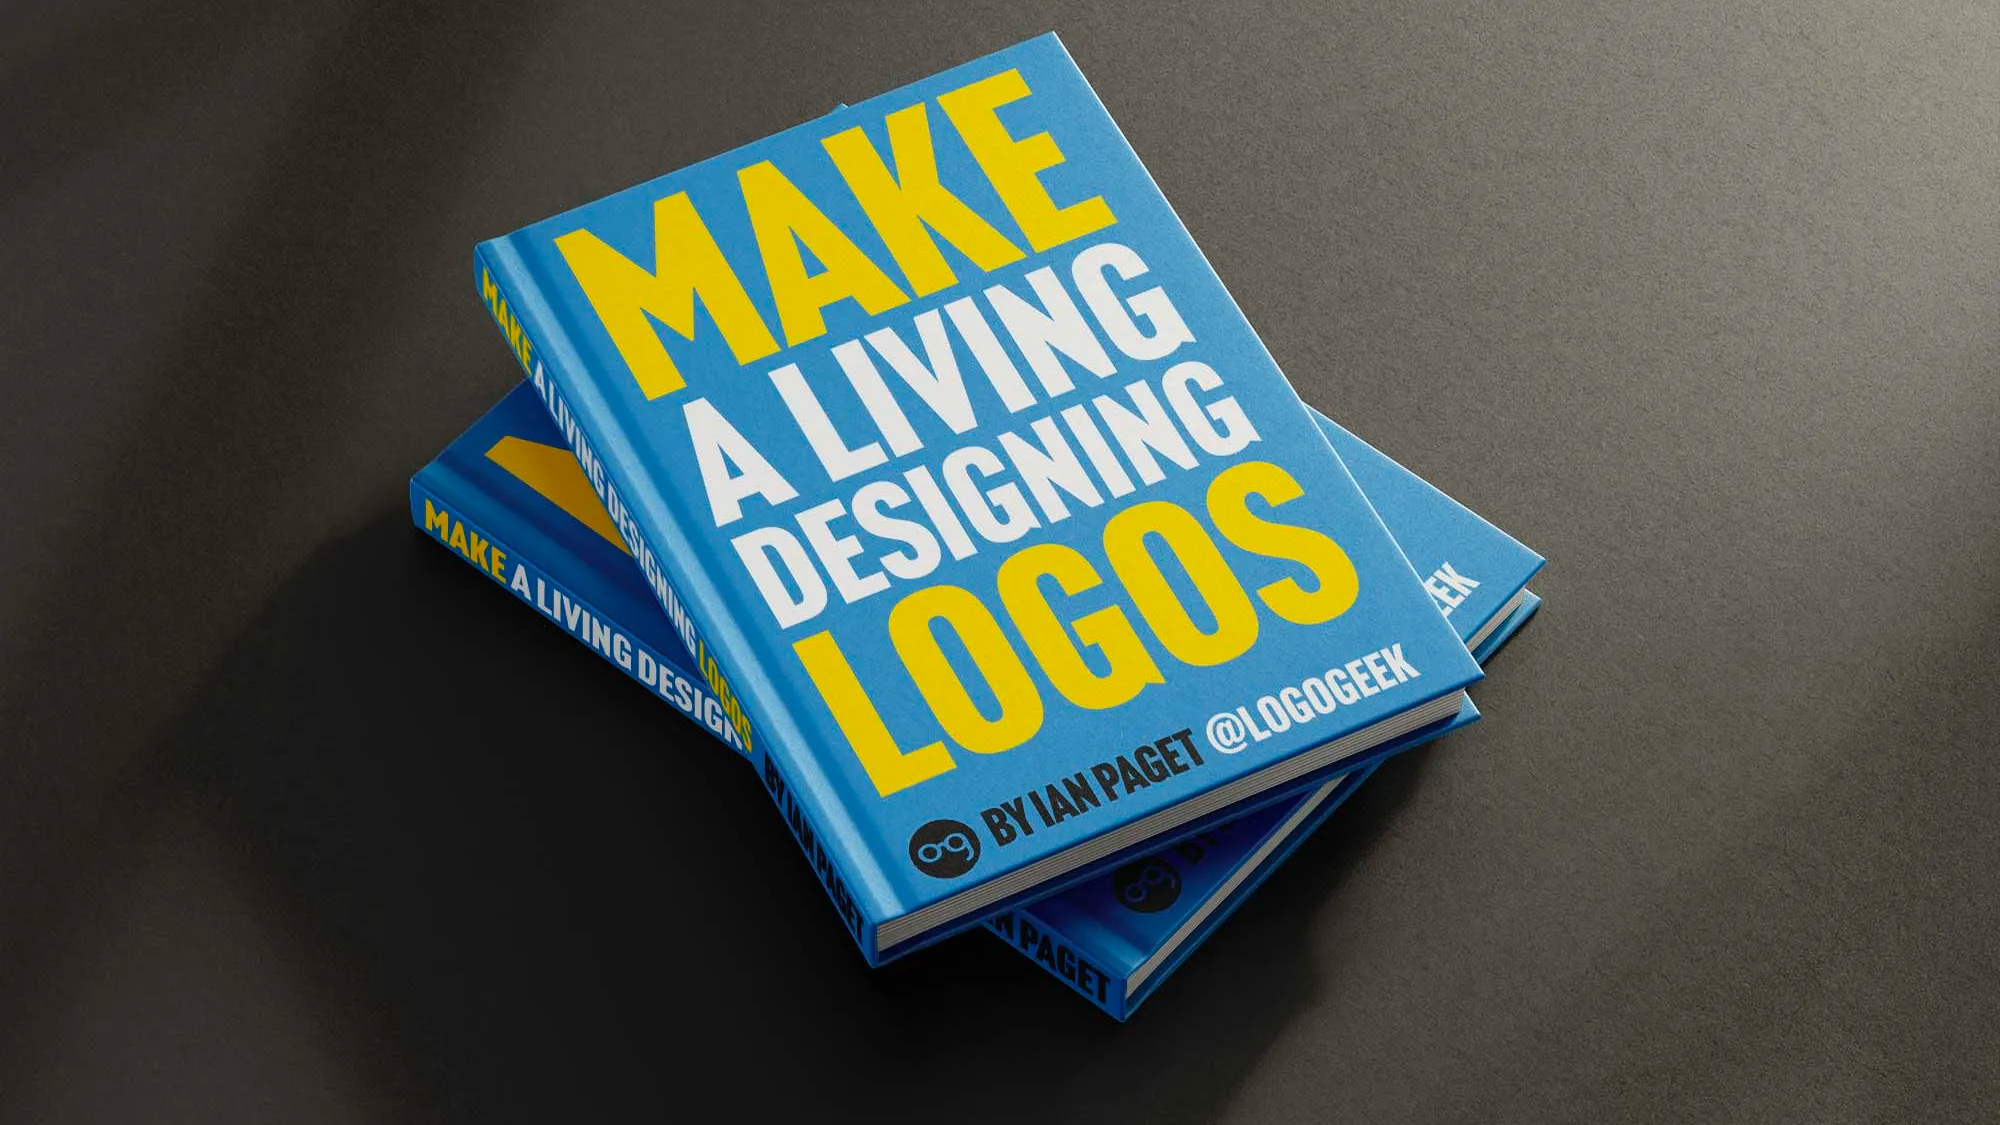 “Make a Living Designing Logos” Book